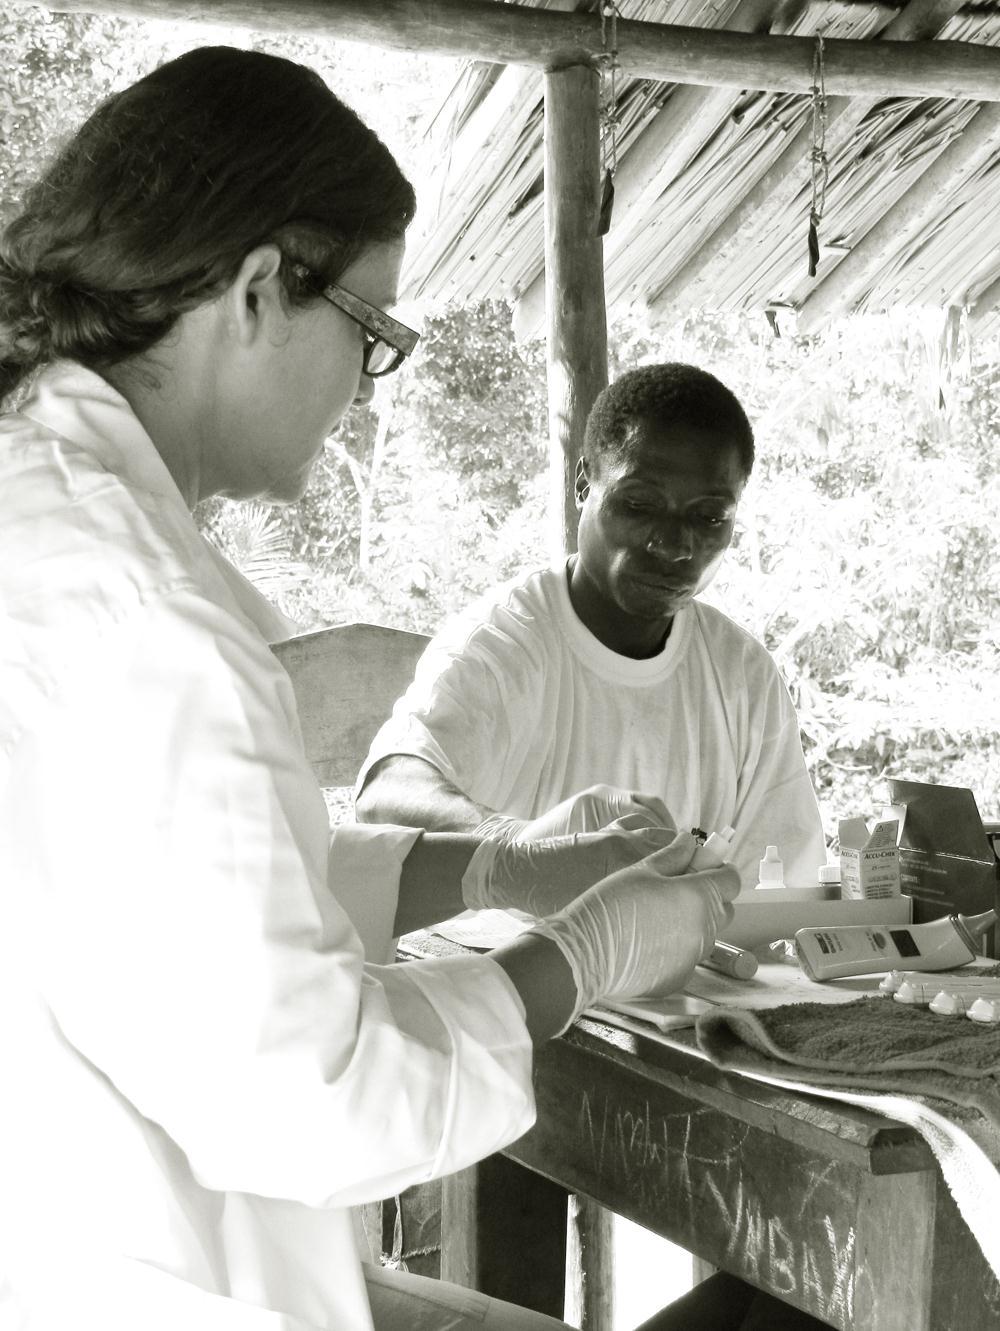 MALARIA OPSPOREN EN BEHANDELEN DAM zorgt ervoor dat de Bayaka gemeenschap in Yandoumbe nauw betrokken is bij de test campagne en weet dat buitenstaanders hen met vrees vervullen.